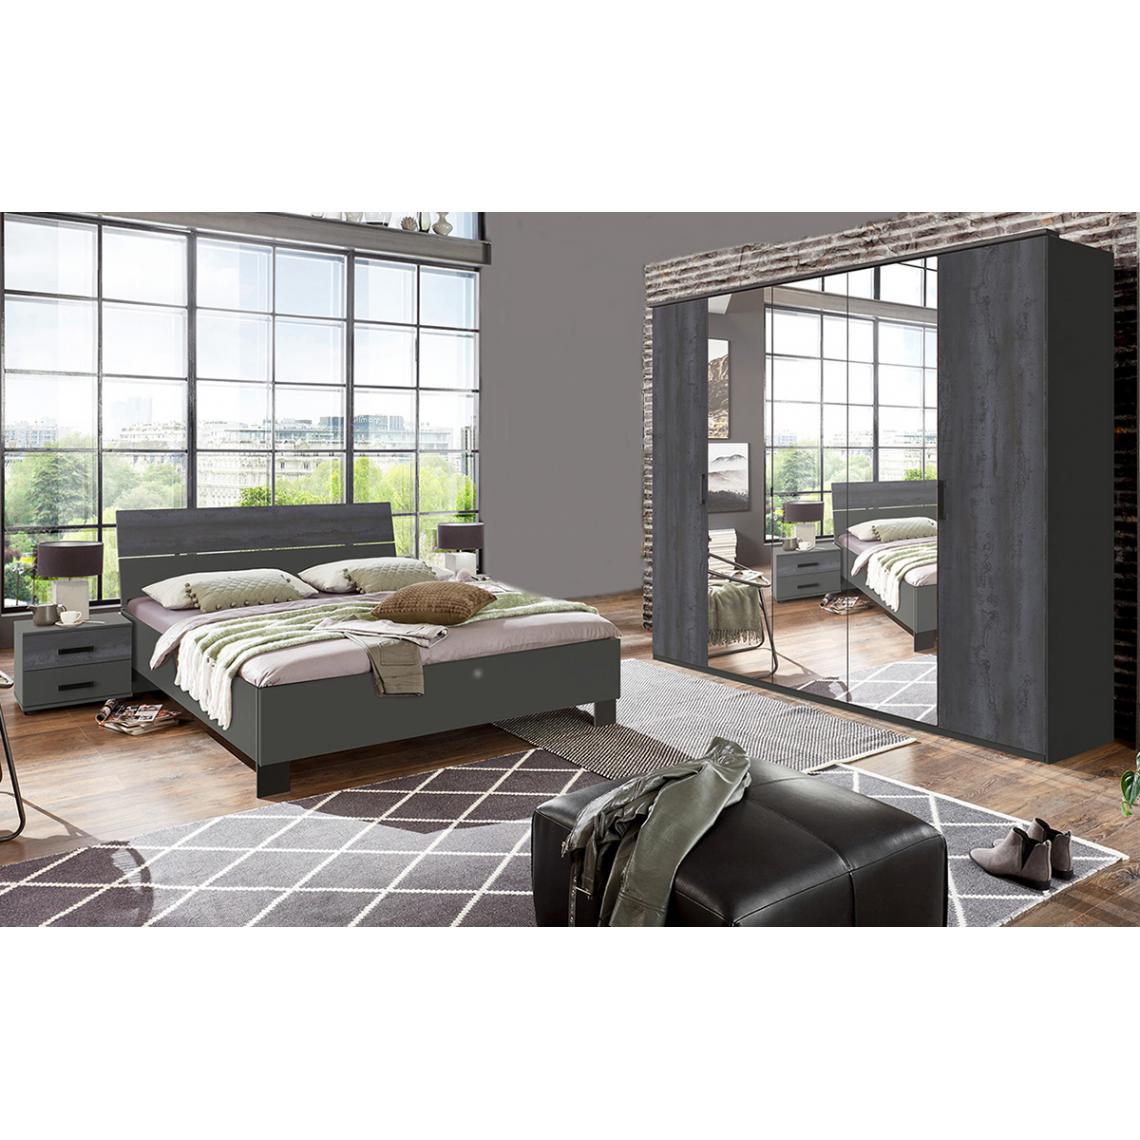 Pegane - Chambre à coucher complète adulte (lit 160 x 200 cm + 2 chevets + armoire) coloris gris foncé - Chambre complète